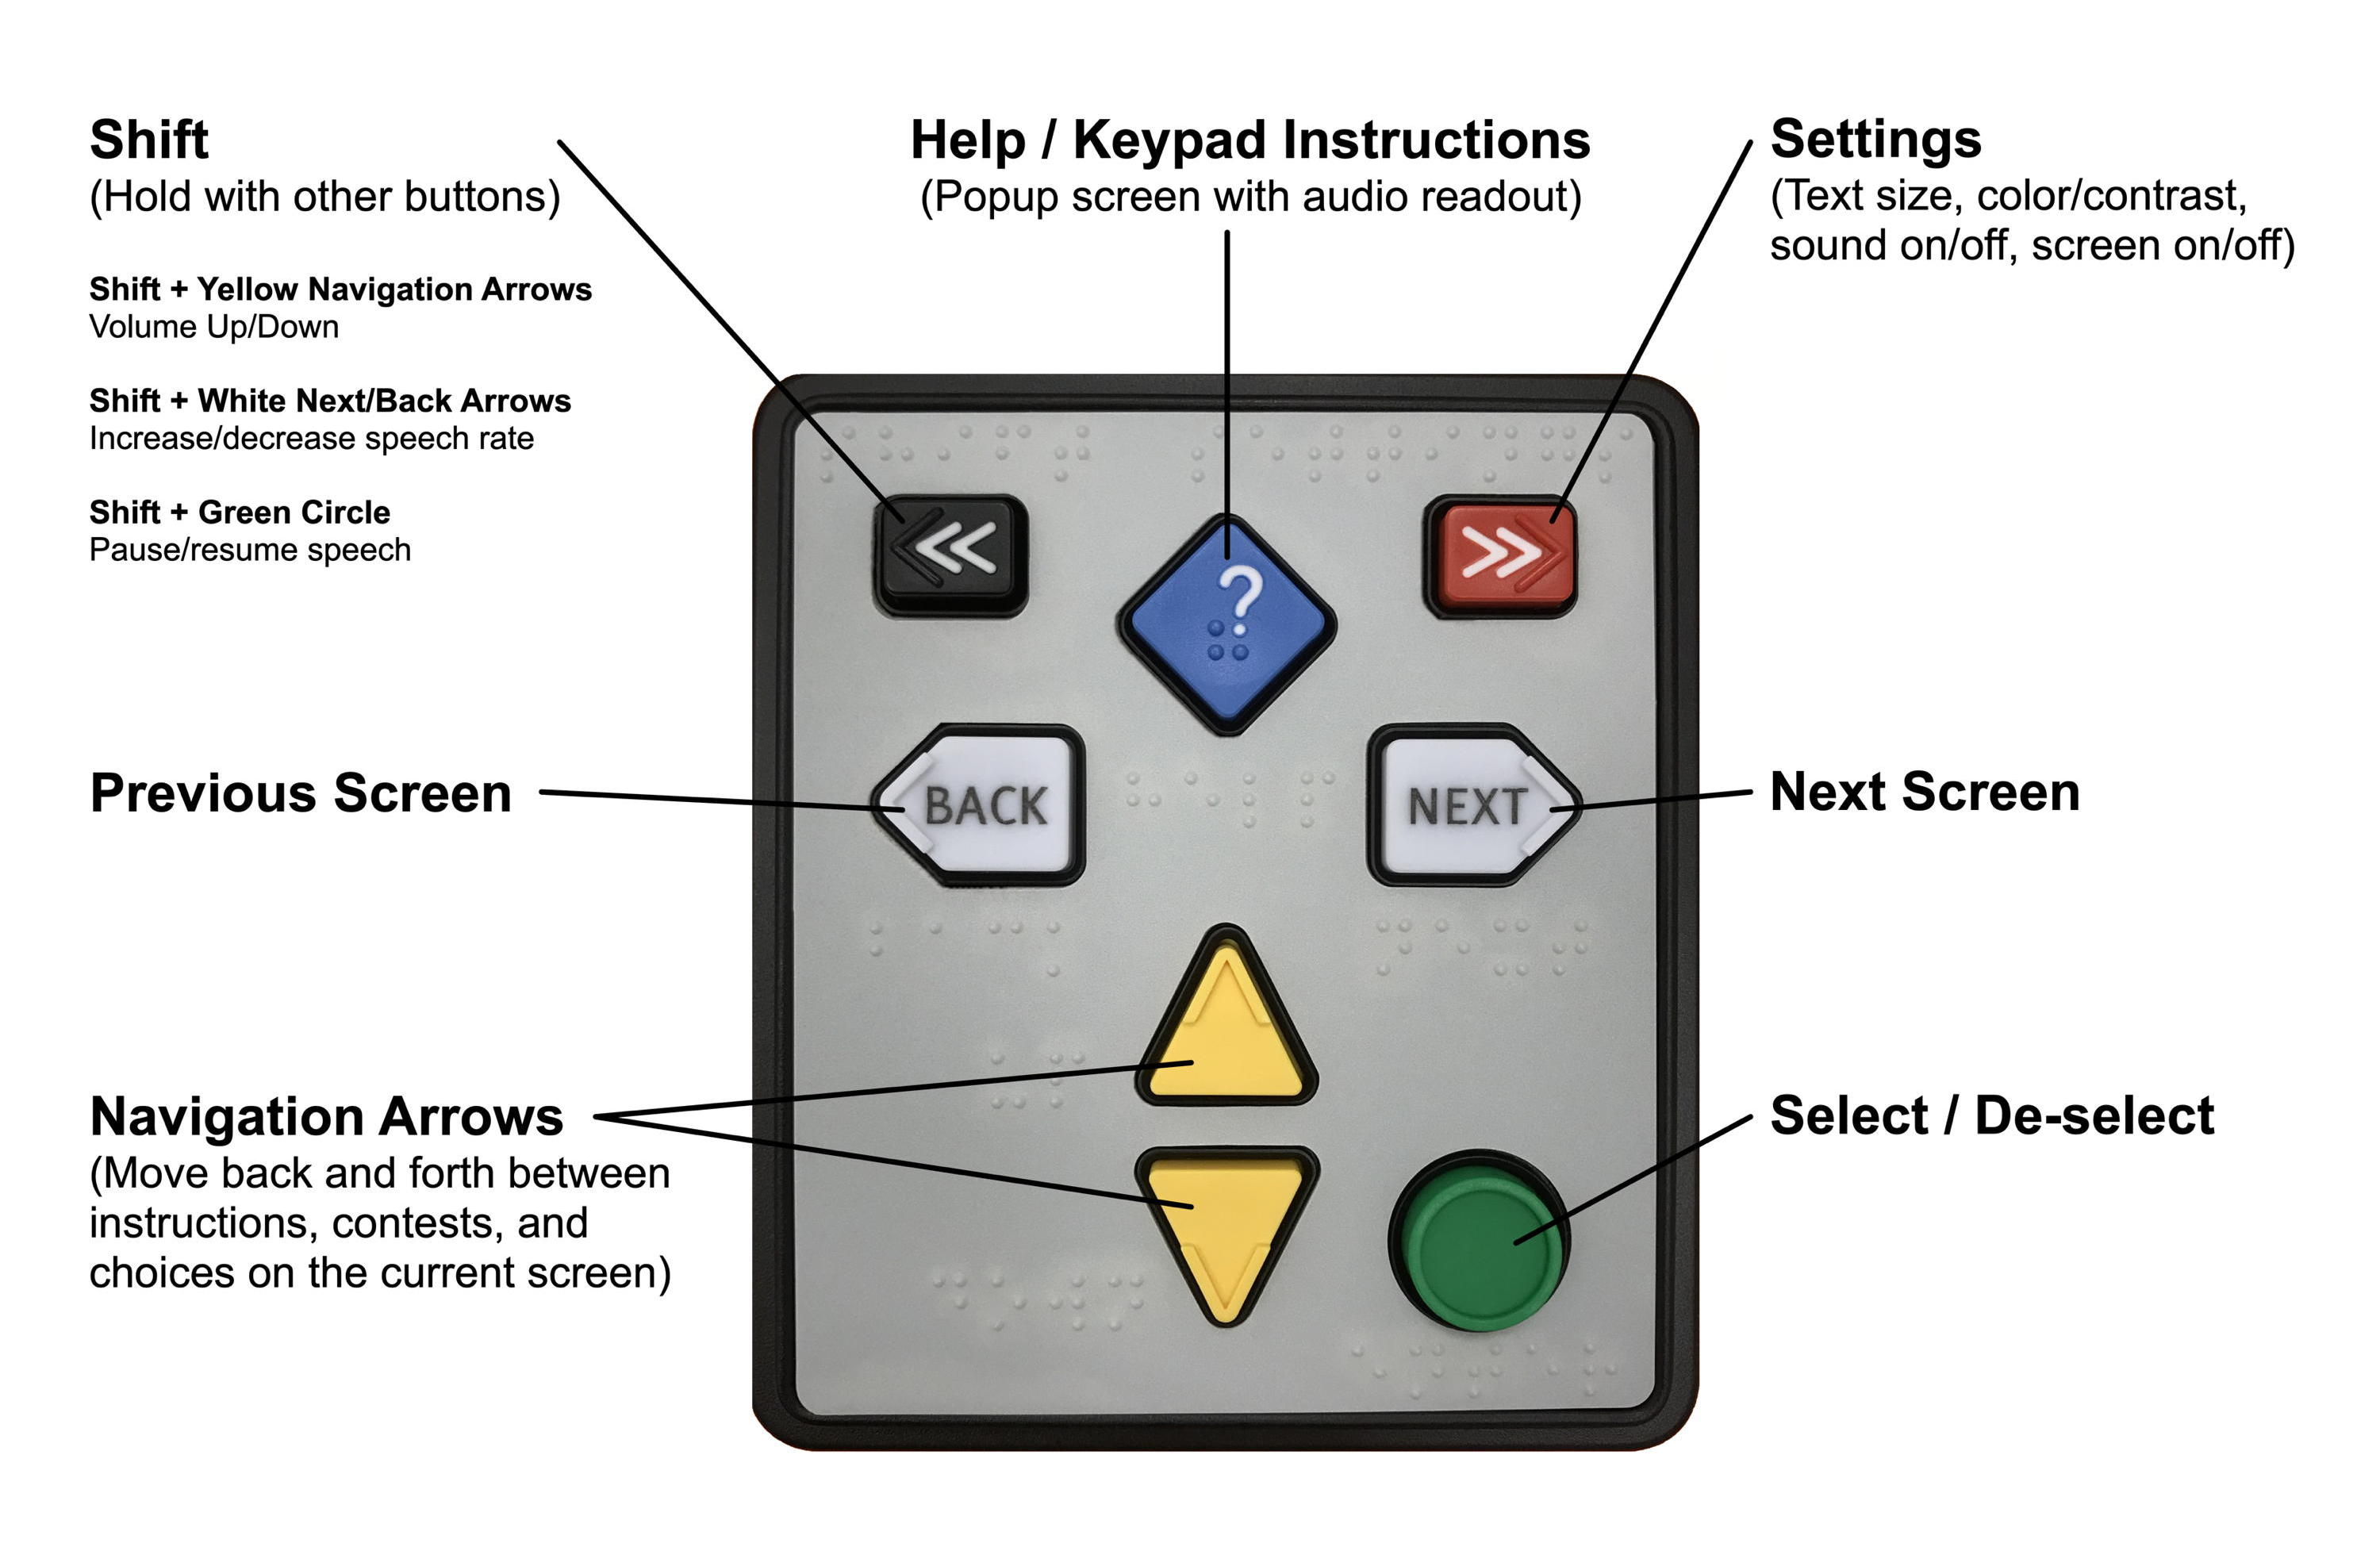 ClearAccess Keypad Instructions